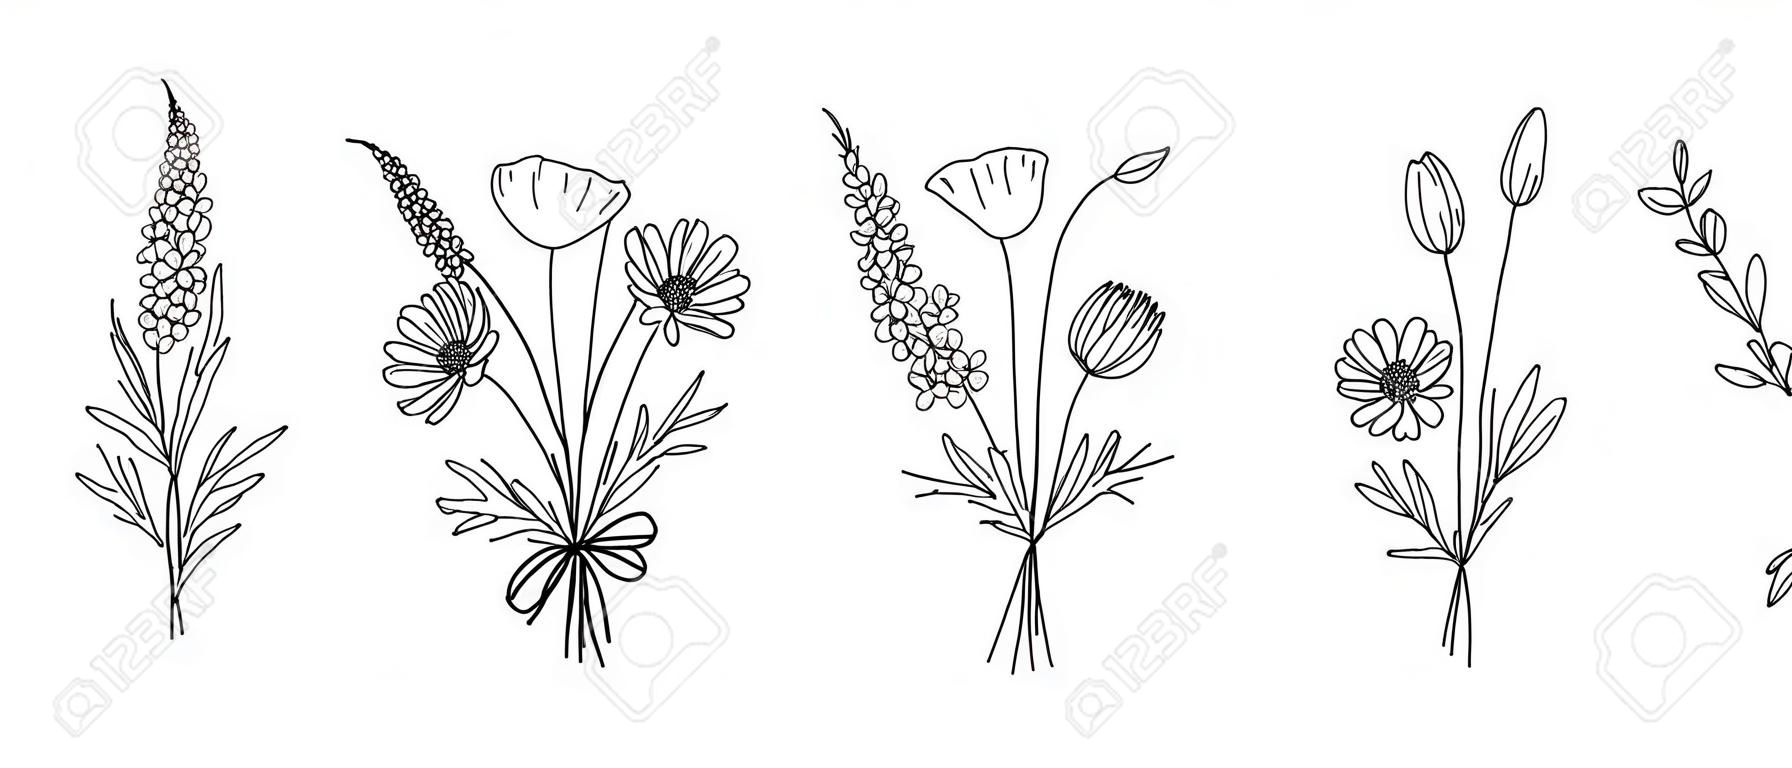 Conjunto de buquês de arte de linha de flores silvestres. Flores de meadow, ervas, plantas selvagens, elementos botânicos desenhados à mão para projetos de design. Ilustração vetorial.